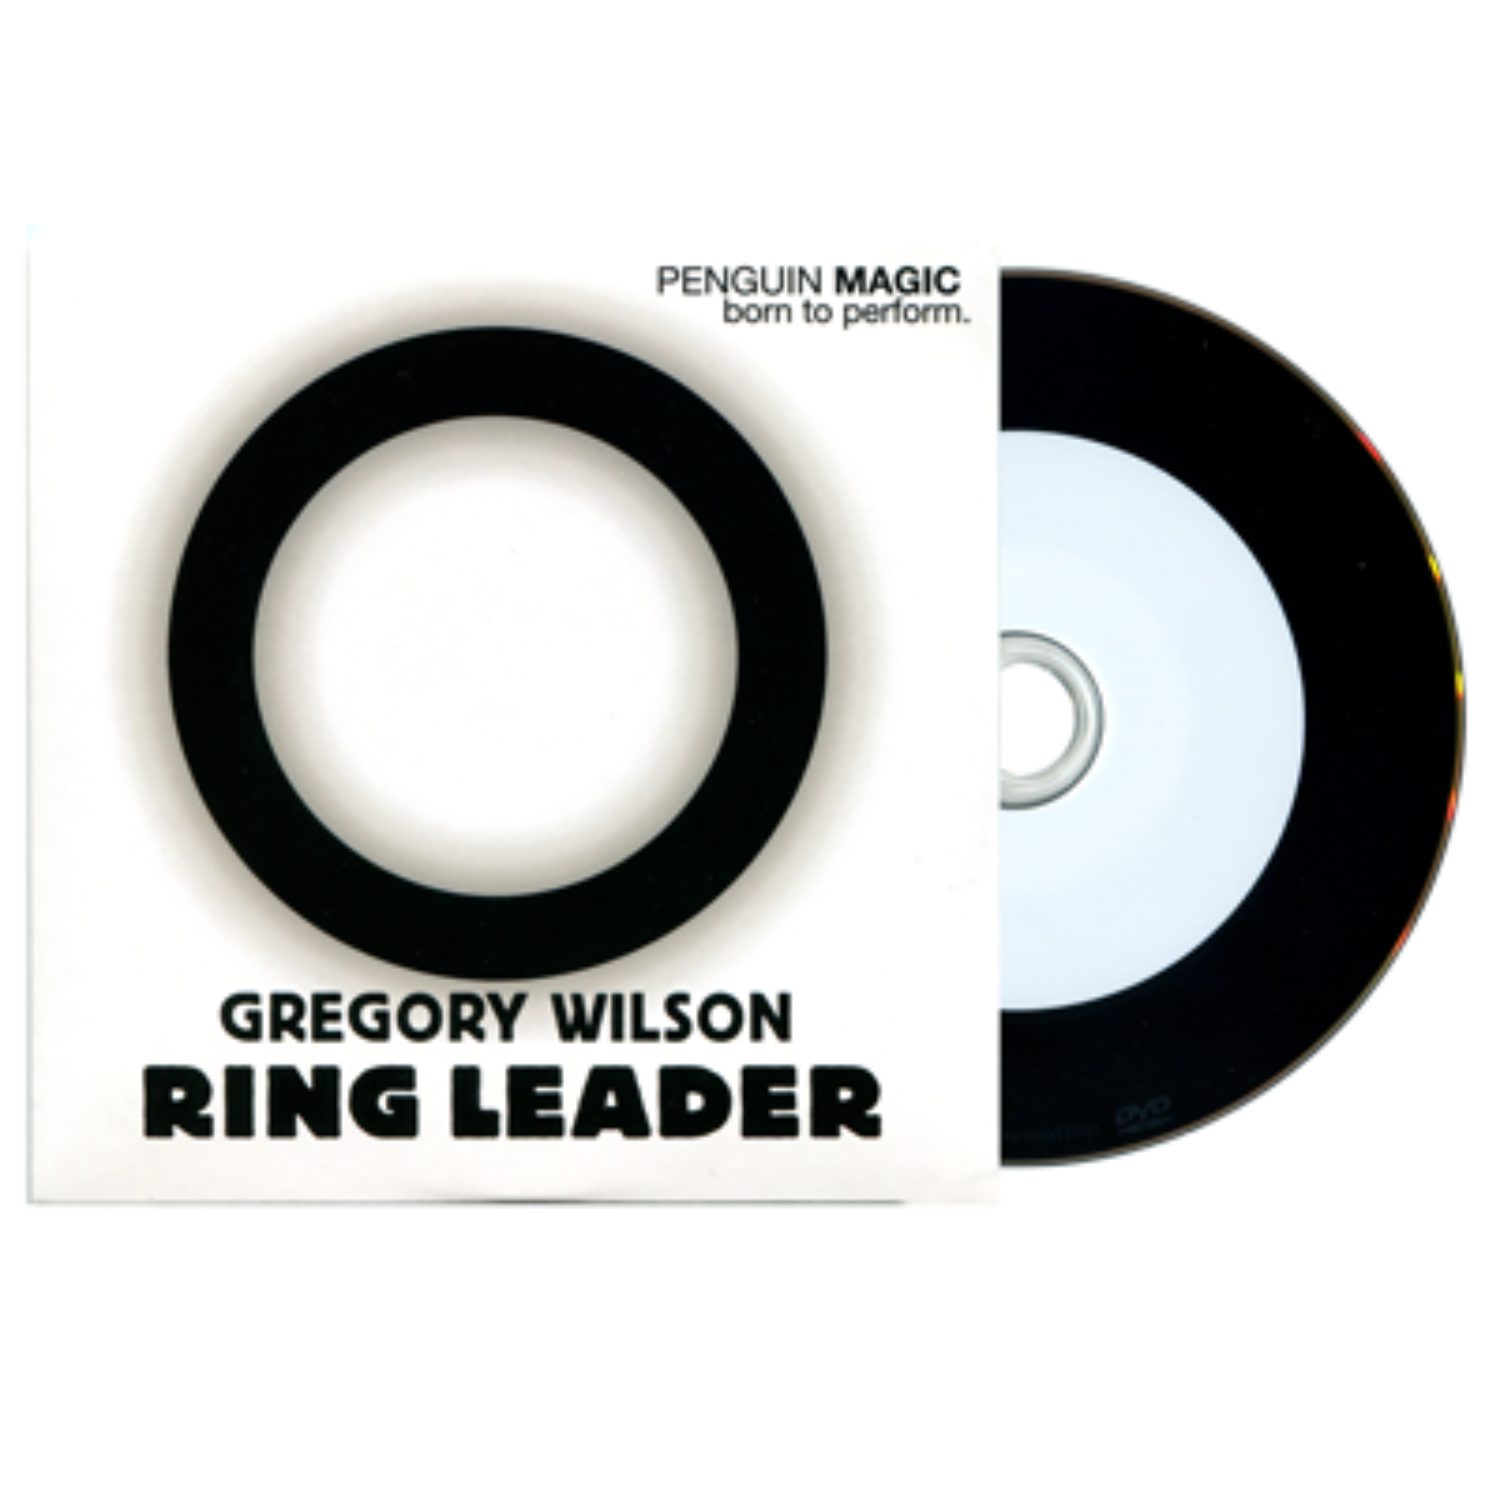 [링리더] Ring Leader by Gregory Wilson 아주 효과적인 반지마술을 경험하실 수 있습니다.